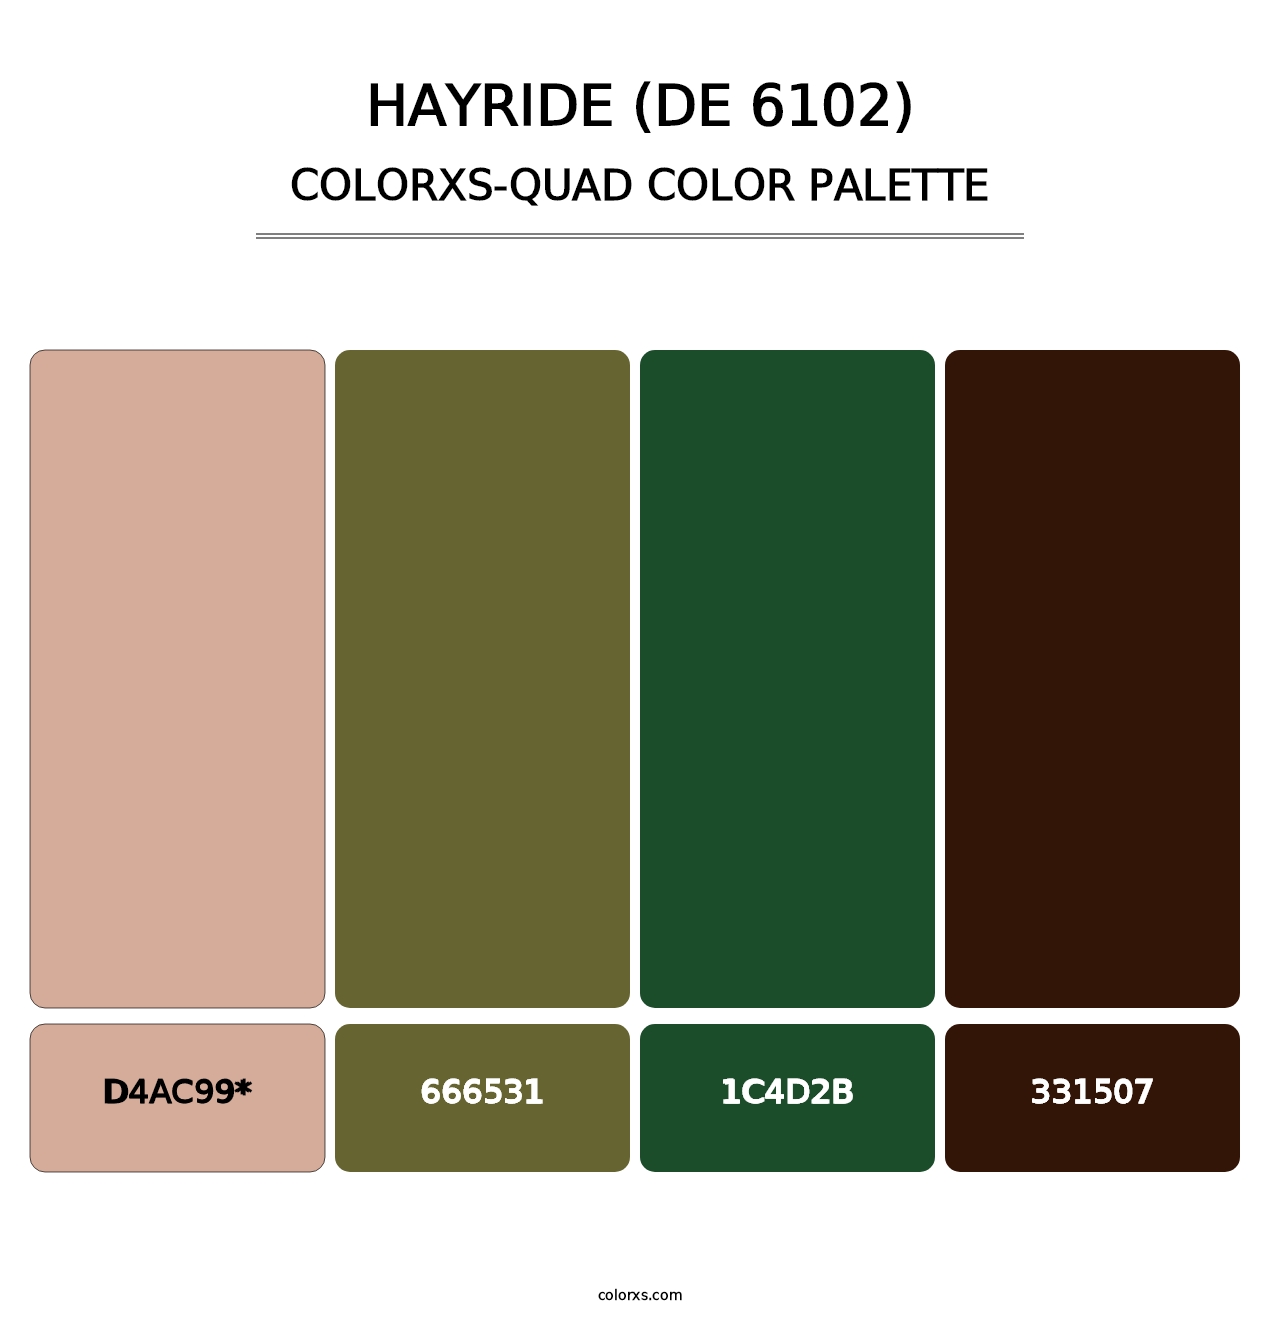 Hayride (DE 6102) - Colorxs Quad Palette